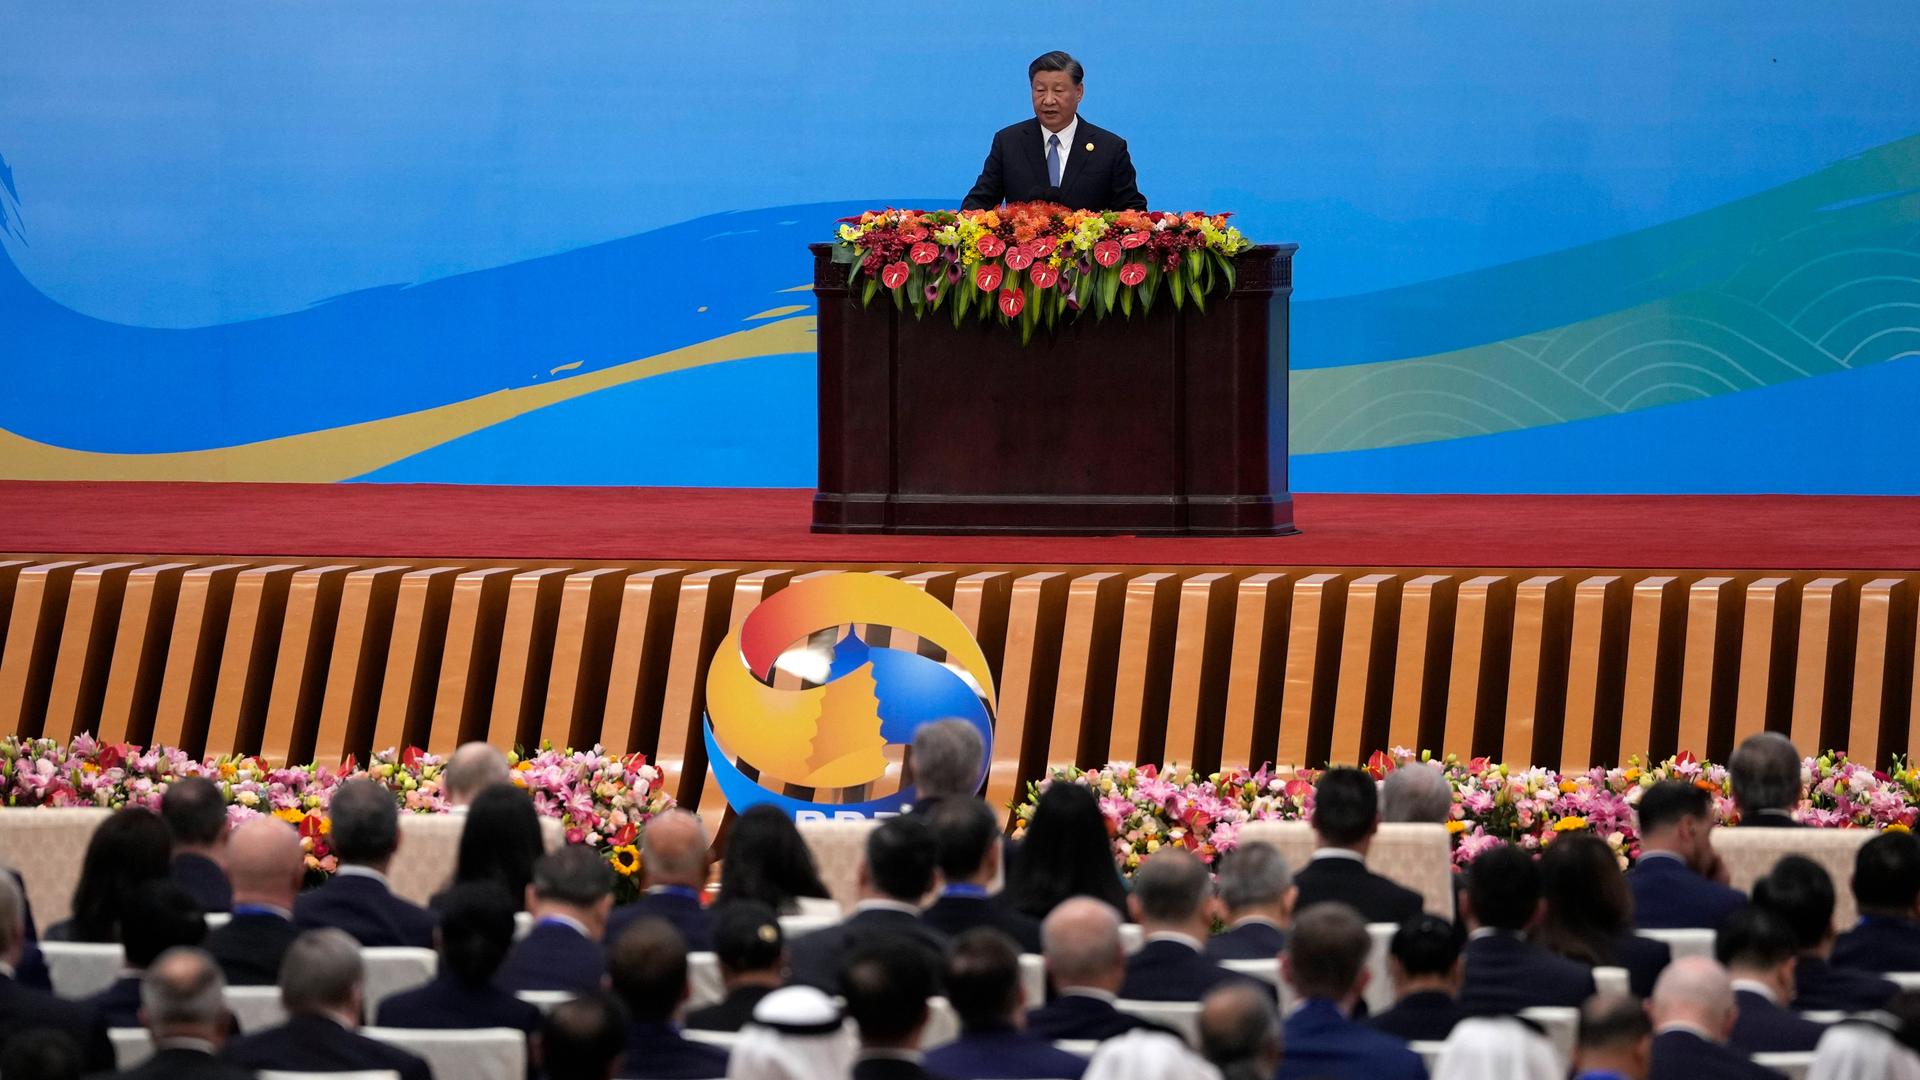 Der chinesische Präsident Xi Jinping steht hinter einem mit Blumen geschmückten Rednerpult. Im Vordergrund sitzen Teilnehmer und hören zu.